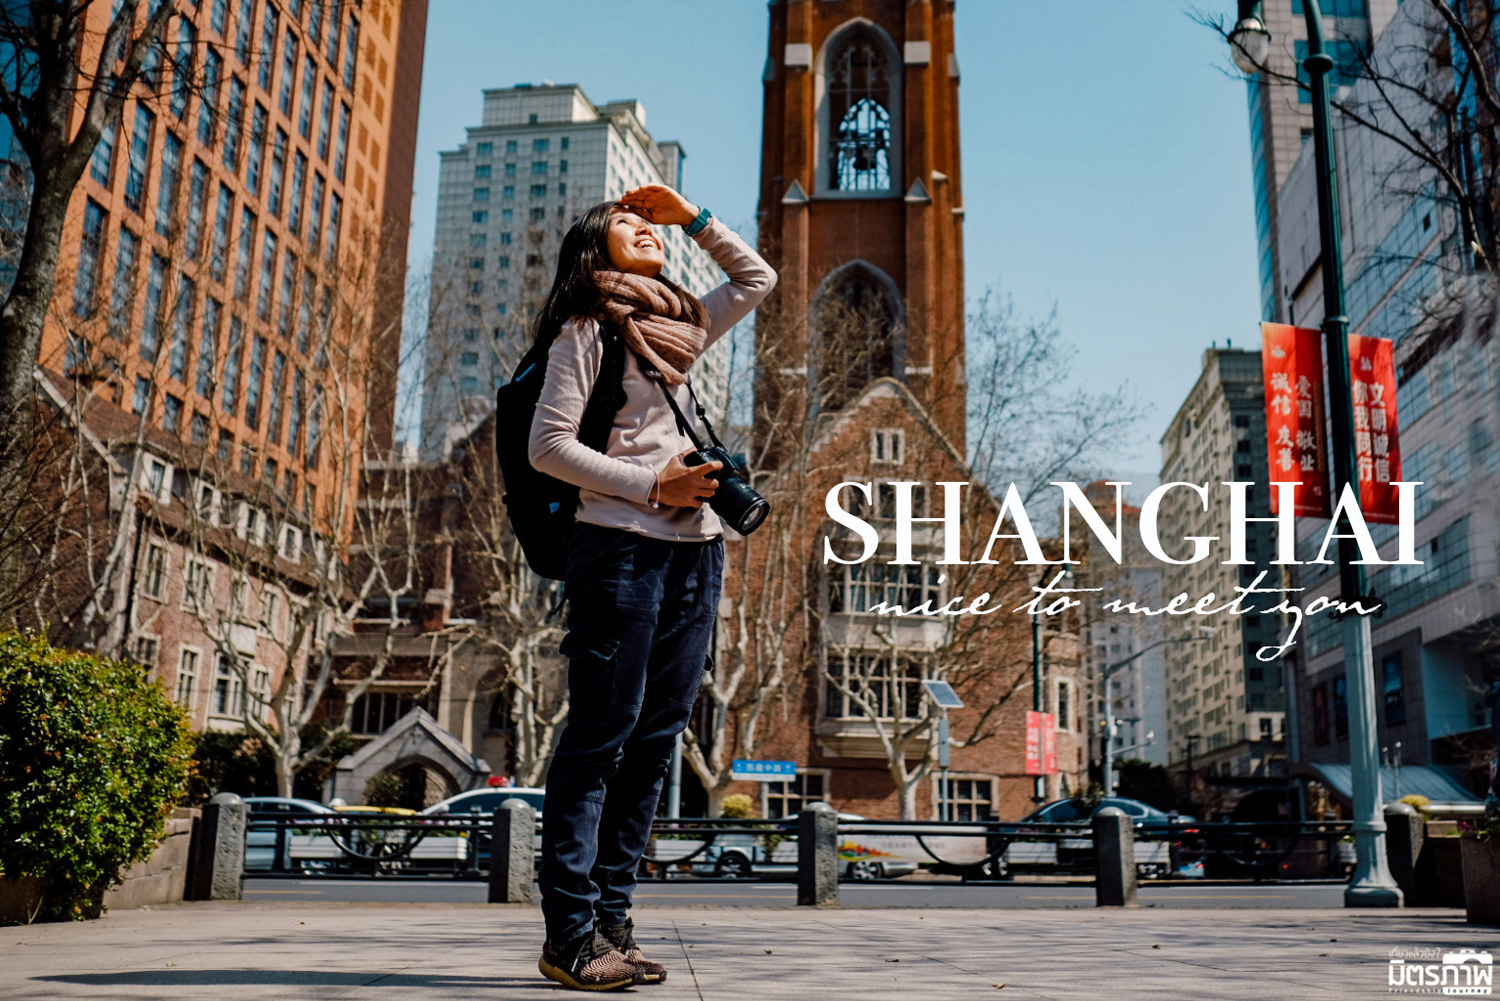 รีวิวเที่ยวจีน ตอน เซี่ยงไฮ้ ไม่ได้ตั้งใจ : Shanghai nice to meet you